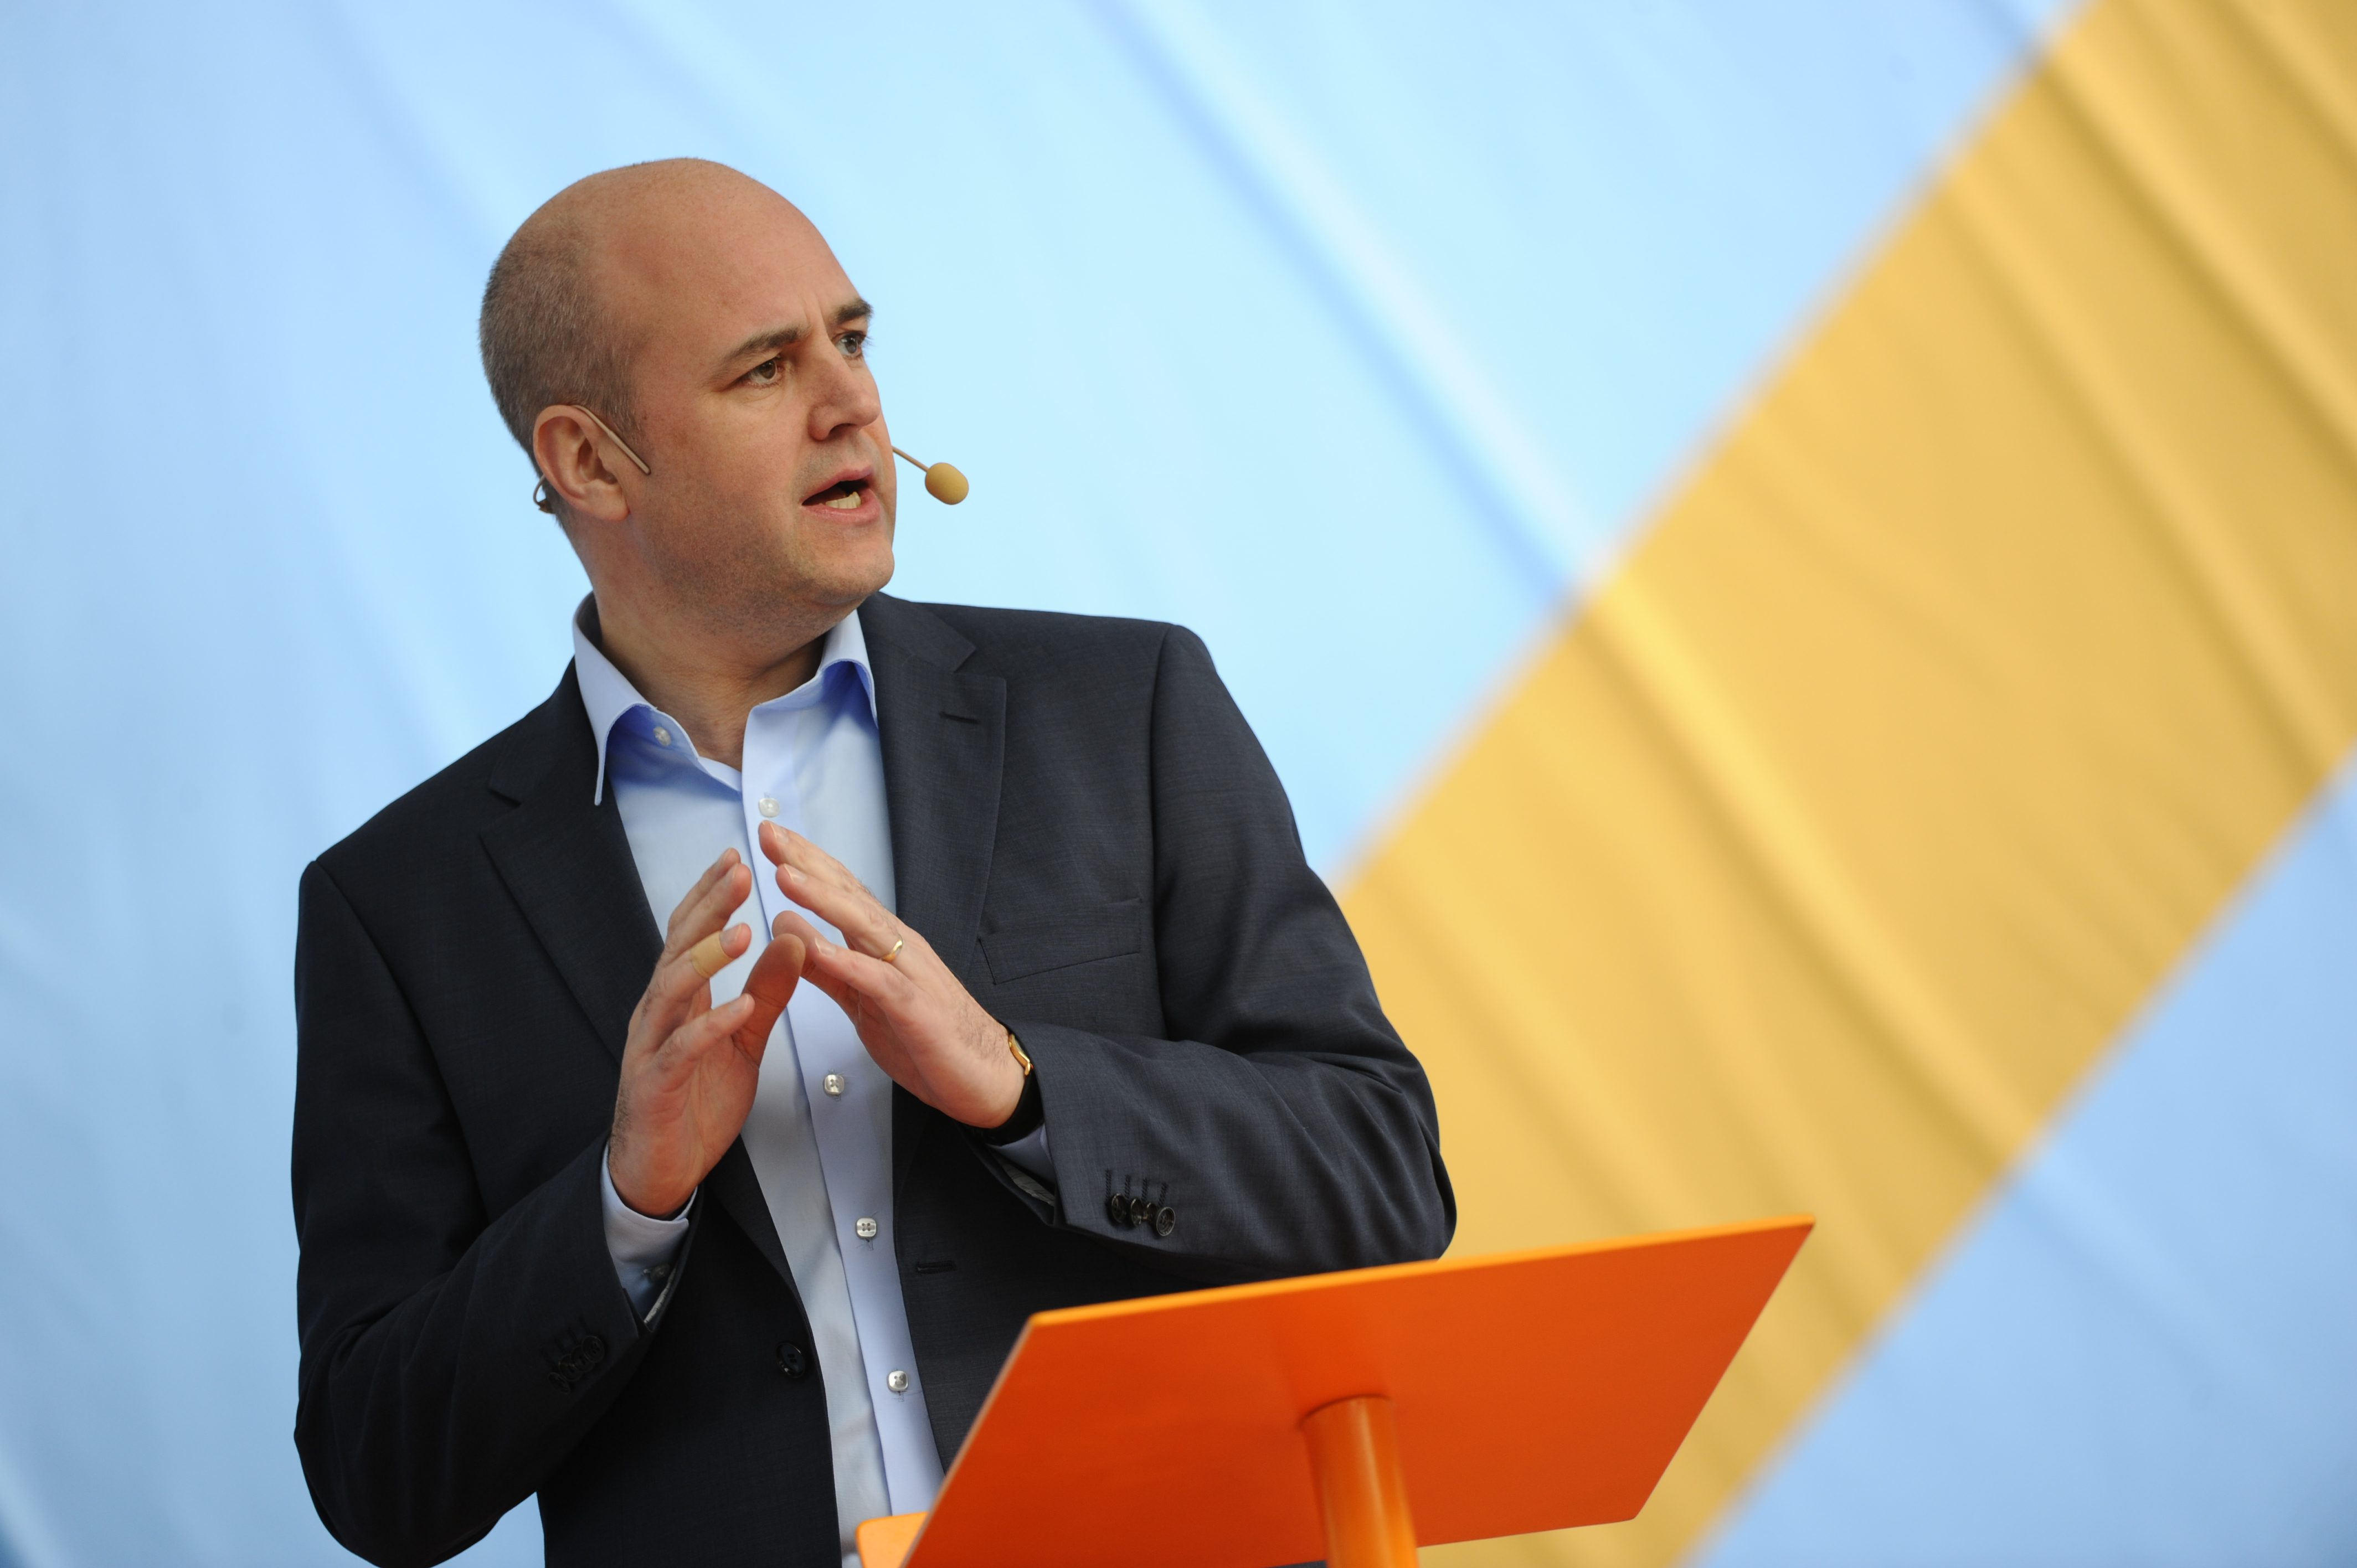 "Jag skulle aldrig vittnat om jag såg Reinfeldt eller Borg bli skjutna, tvärtom hissat den svenska flaggan." - skriver Ronny Esbjörnsson på Avpixlat: 